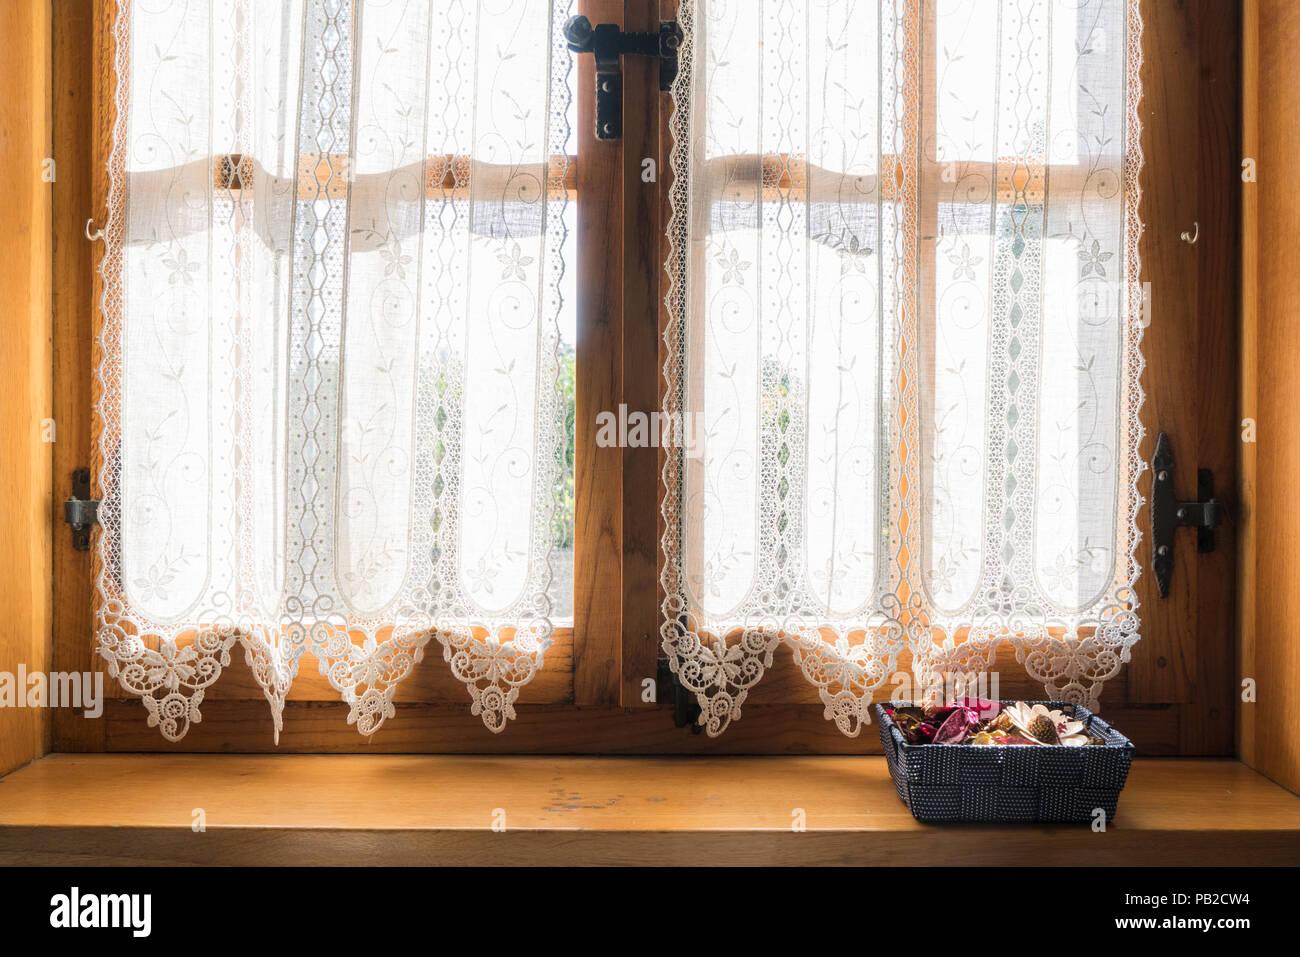 Eine Holz- Fenster mit einem weißen bestickten Vorhang und einen kleinen  Korb mit getrockneten Blumen auf der Fensterbank Stockfotografie - Alamy